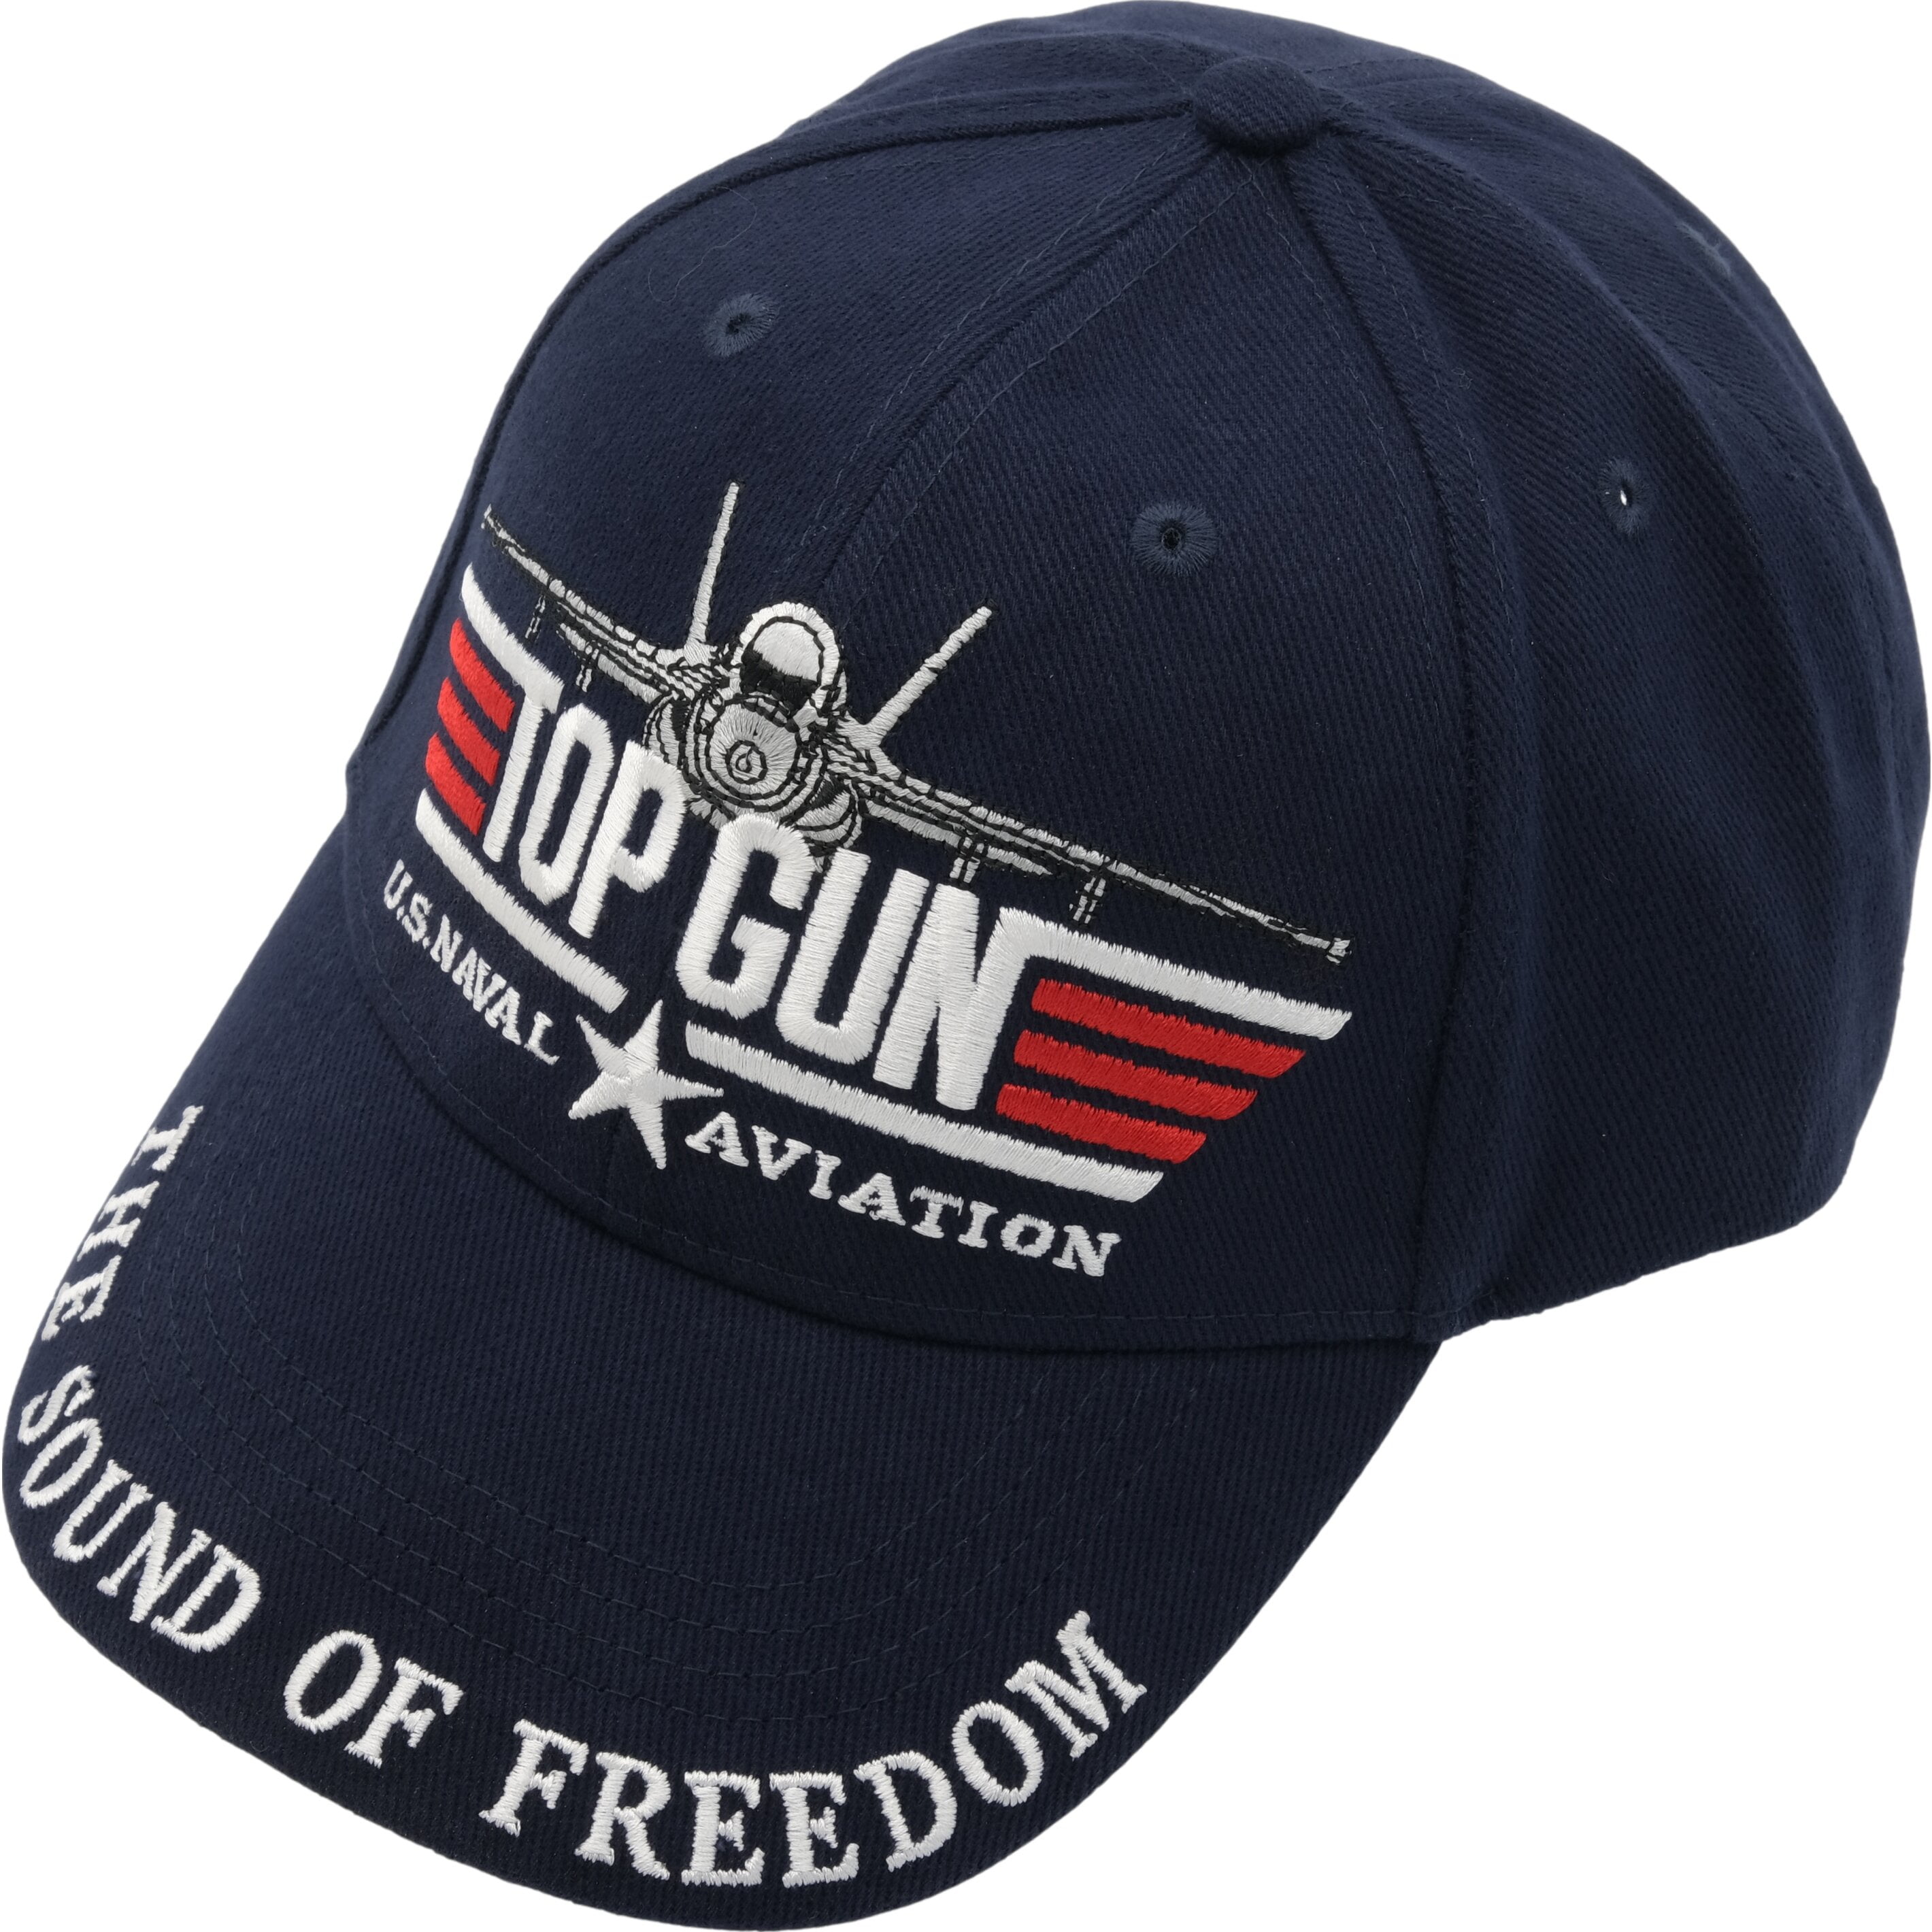 Gun Hat Top Cap U.S.Navy Aviation